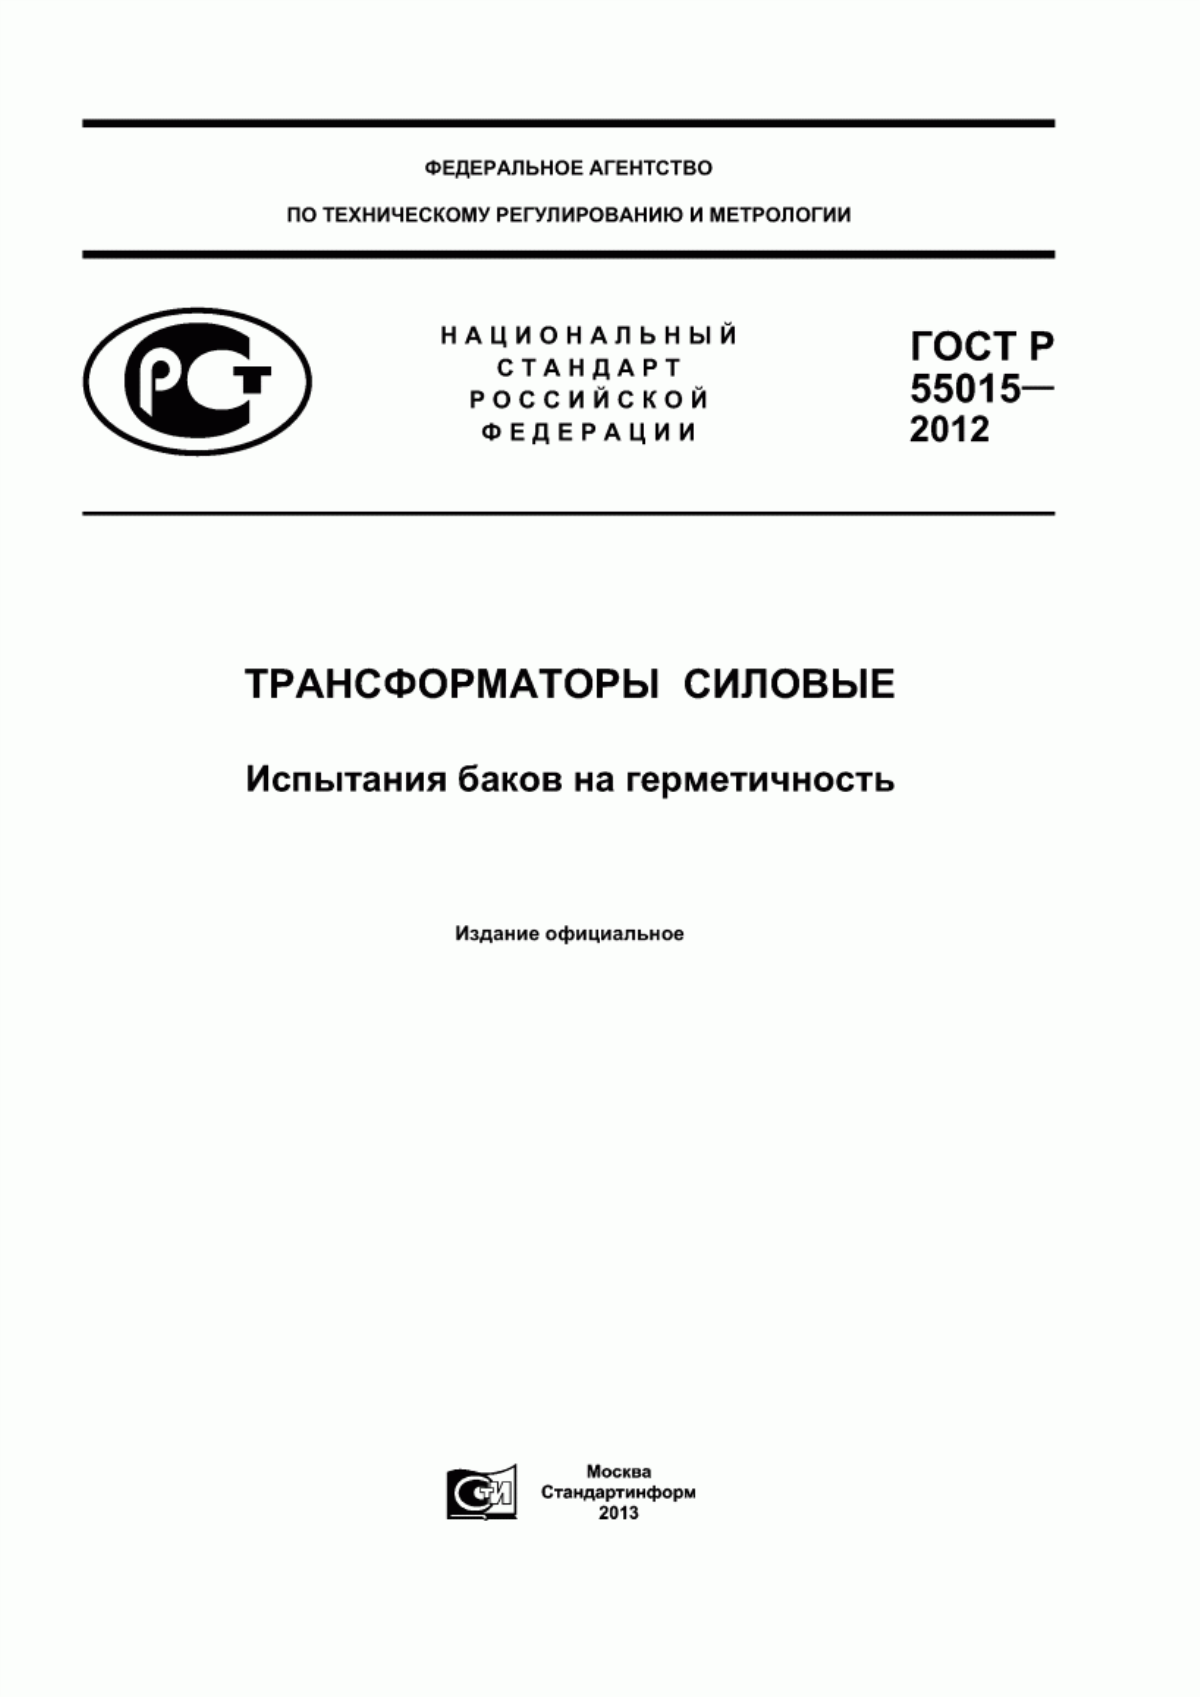 ГОСТ Р 55015-2012 Трансформаторы силовые. Испытания баков на герметичность